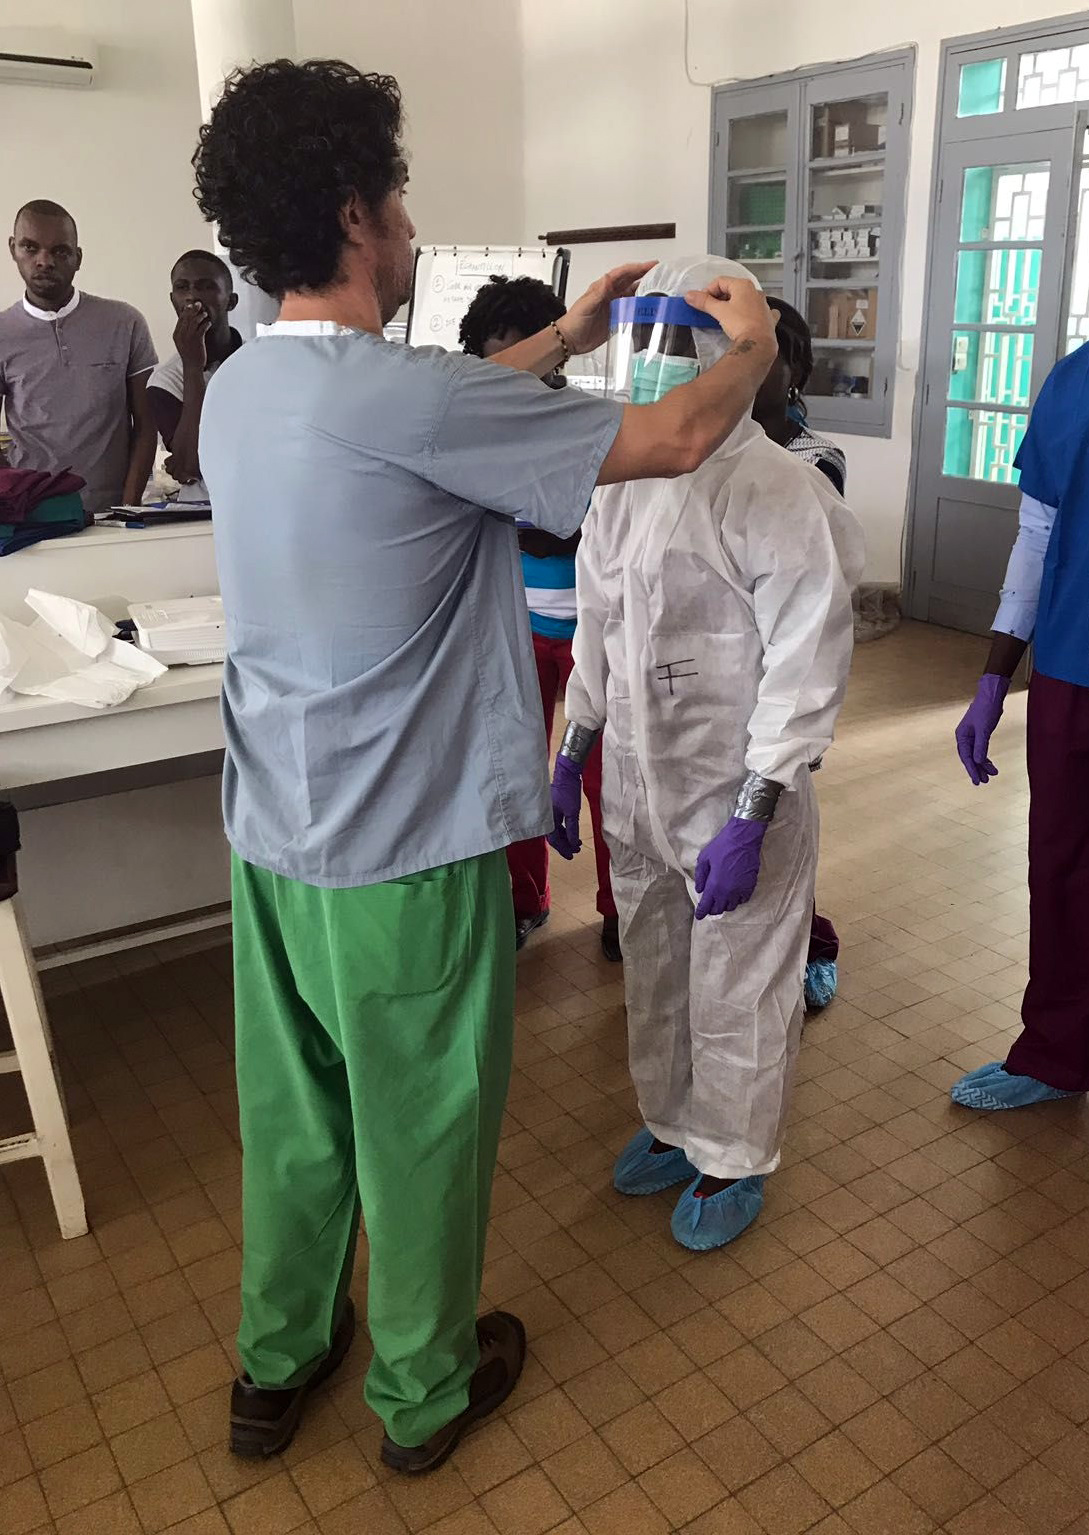 Einsatz der "Schnell einsetzbaren Expertengruppe Gesundheit" (SEEG ) in der Demokratische Republik Kongo, 2018: Vorbereitung auf eine mögliche Ausbreitung von Ebola; hier: Training des korrekten An- und Ausziehens von Schutzkleidung